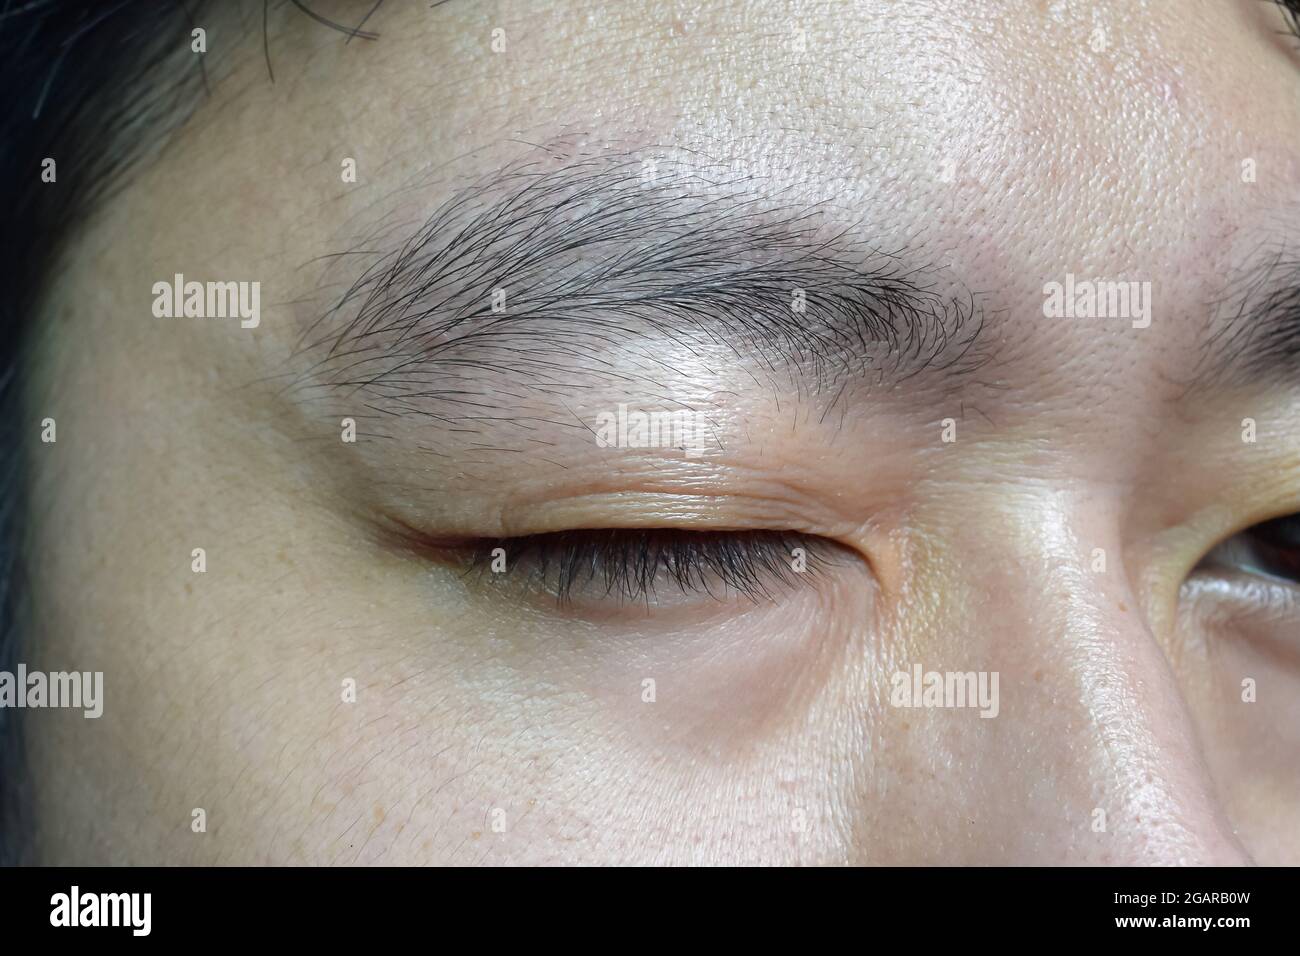 Alternde Hautfalten oder Hautfalten oder Falten im Gesicht, insbesondere das obere Augenlid des südostasiatischen, chinesischen jungen Mannes mit einem einzigen Augenlid. Frühe Alterung. Stockfoto